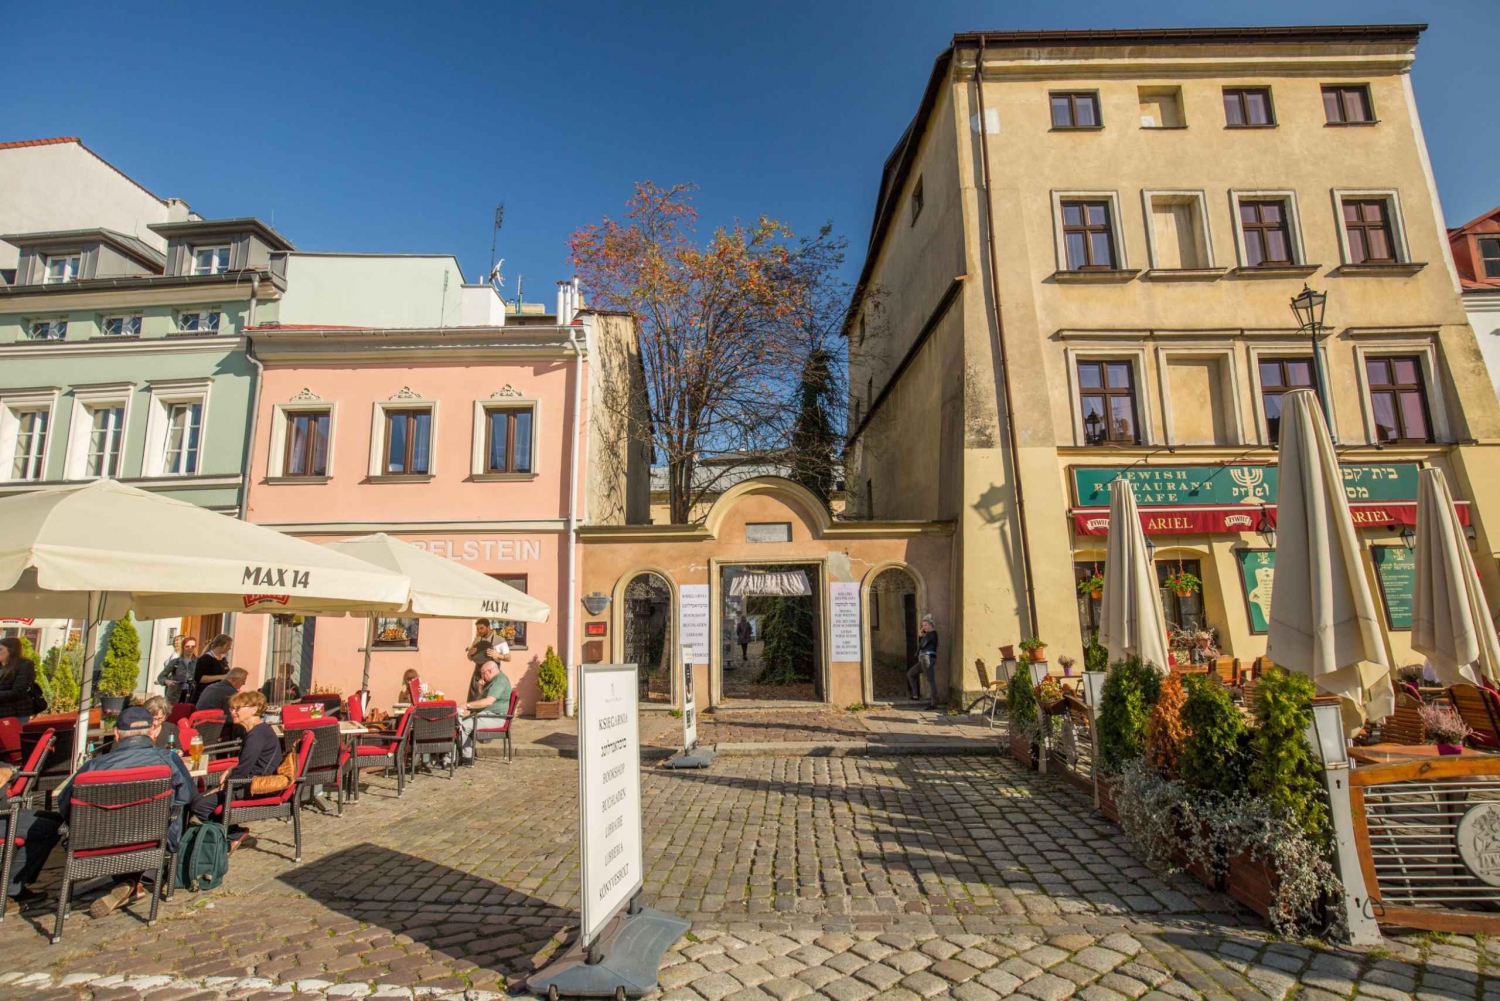 Kraków: Jewish Quarter, Ghetto, Auschwitz, and Wieliczka